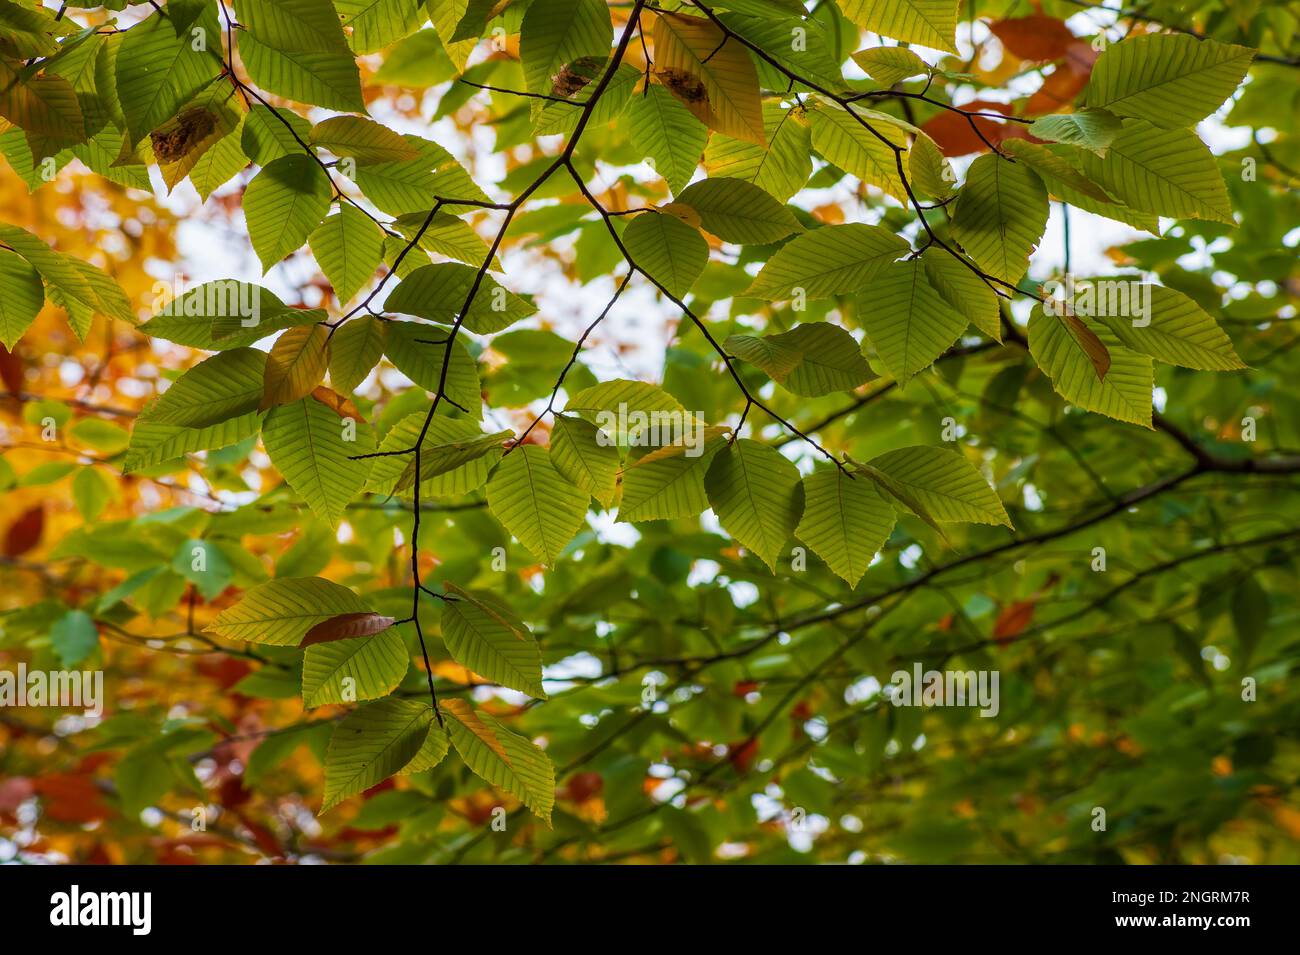 Una rama de un árbol de haya americano (Fagus grandifolia) en follaje pico de otoño. Hojas en tonos de verde. Borestone Mountain, Maine, Estados Unidos. Foto de stock